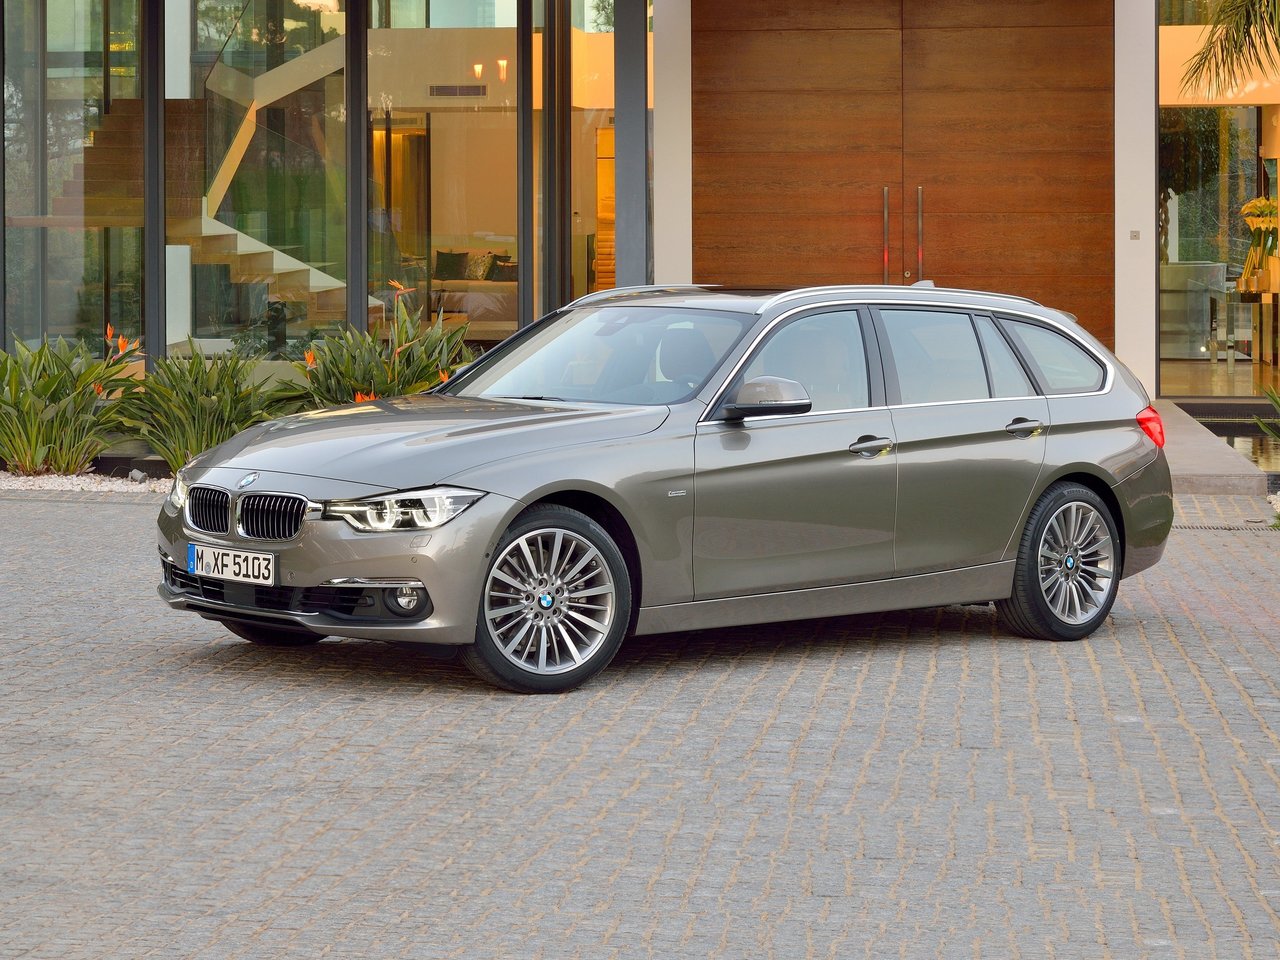 BMW 3 Серии, 2015 - 2020, VI (F3x) Рестайлинг, универсал 5 дв.: купить, технические характеристики, отзывы и объявления